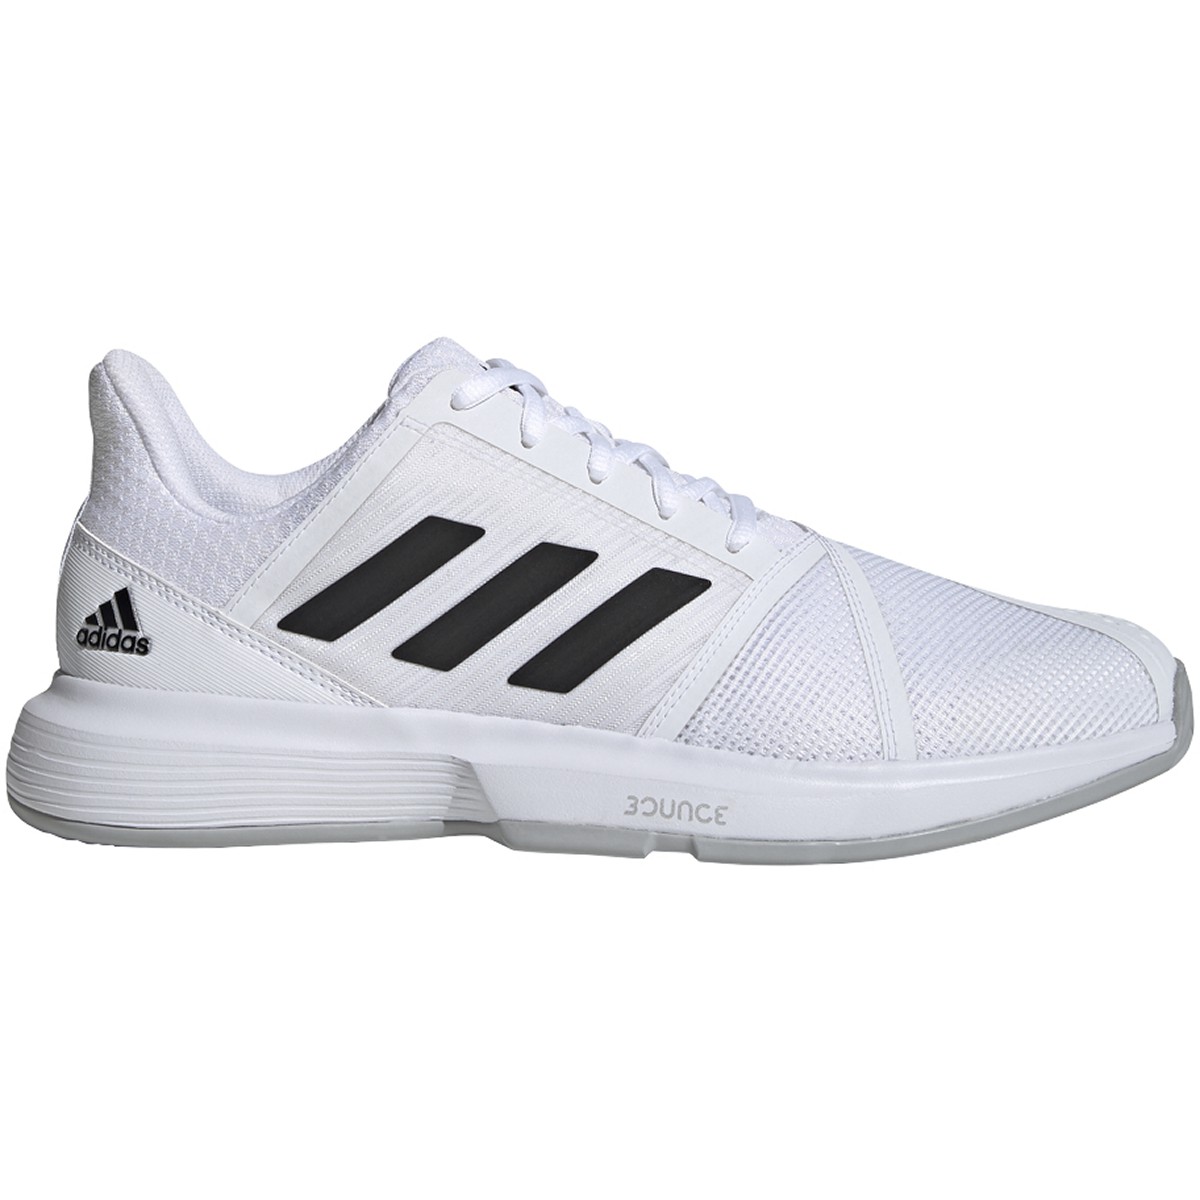 Adidas Men's CourtJam Bounce Wide Tennis Shoes (White/Core Black/Matte ...